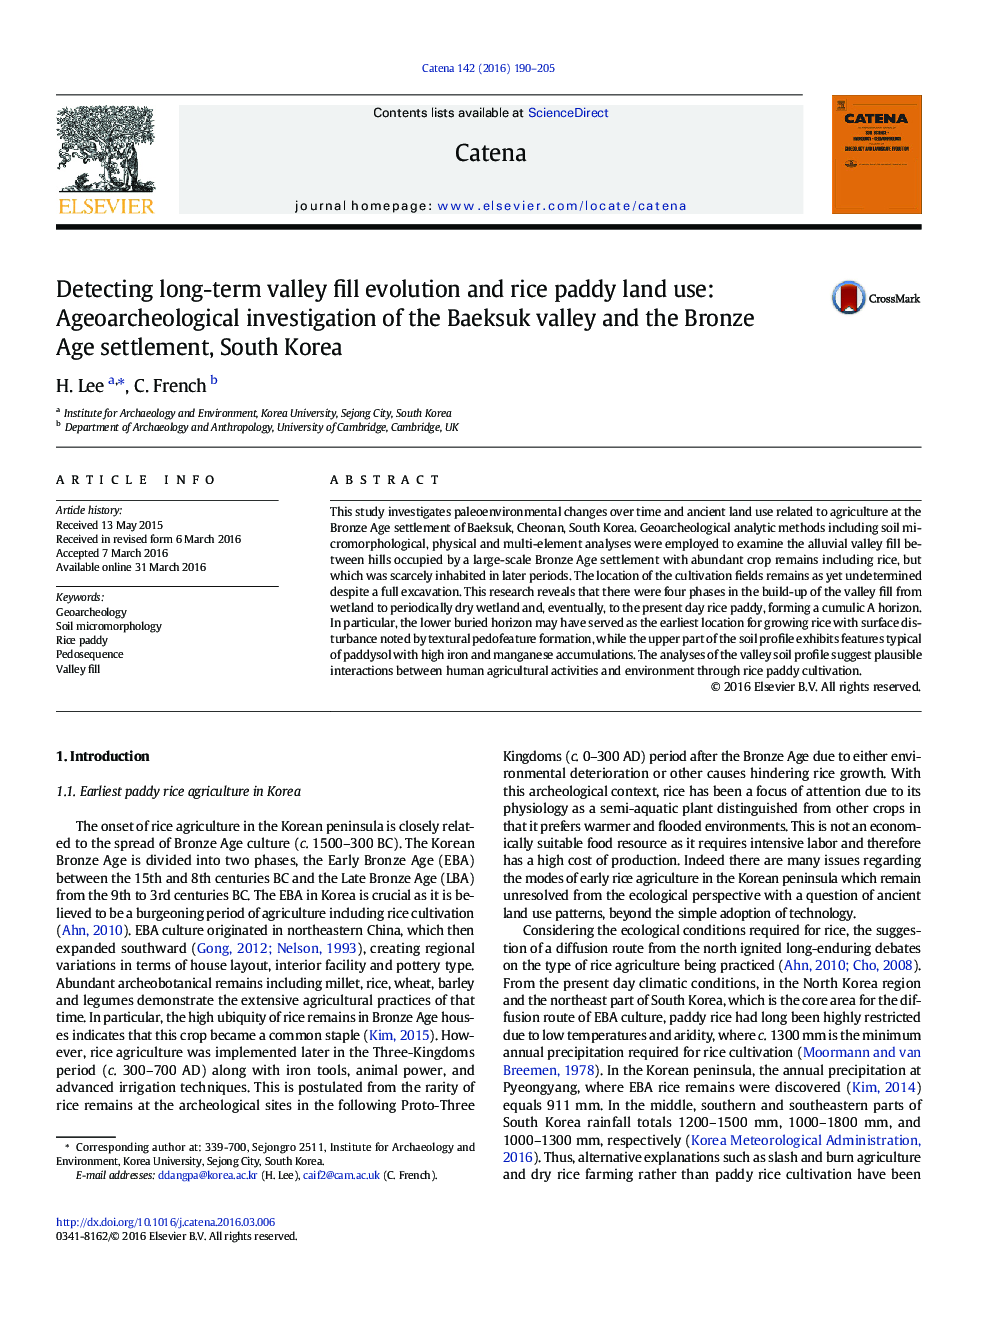 تشخیص طوفان دراز بلند و استفاده از زمین برنج برنج: تحقیقات در مورد سن و باستان شناسی دره باکسوک و حل و فصل سن برنز، کره جنوبی 